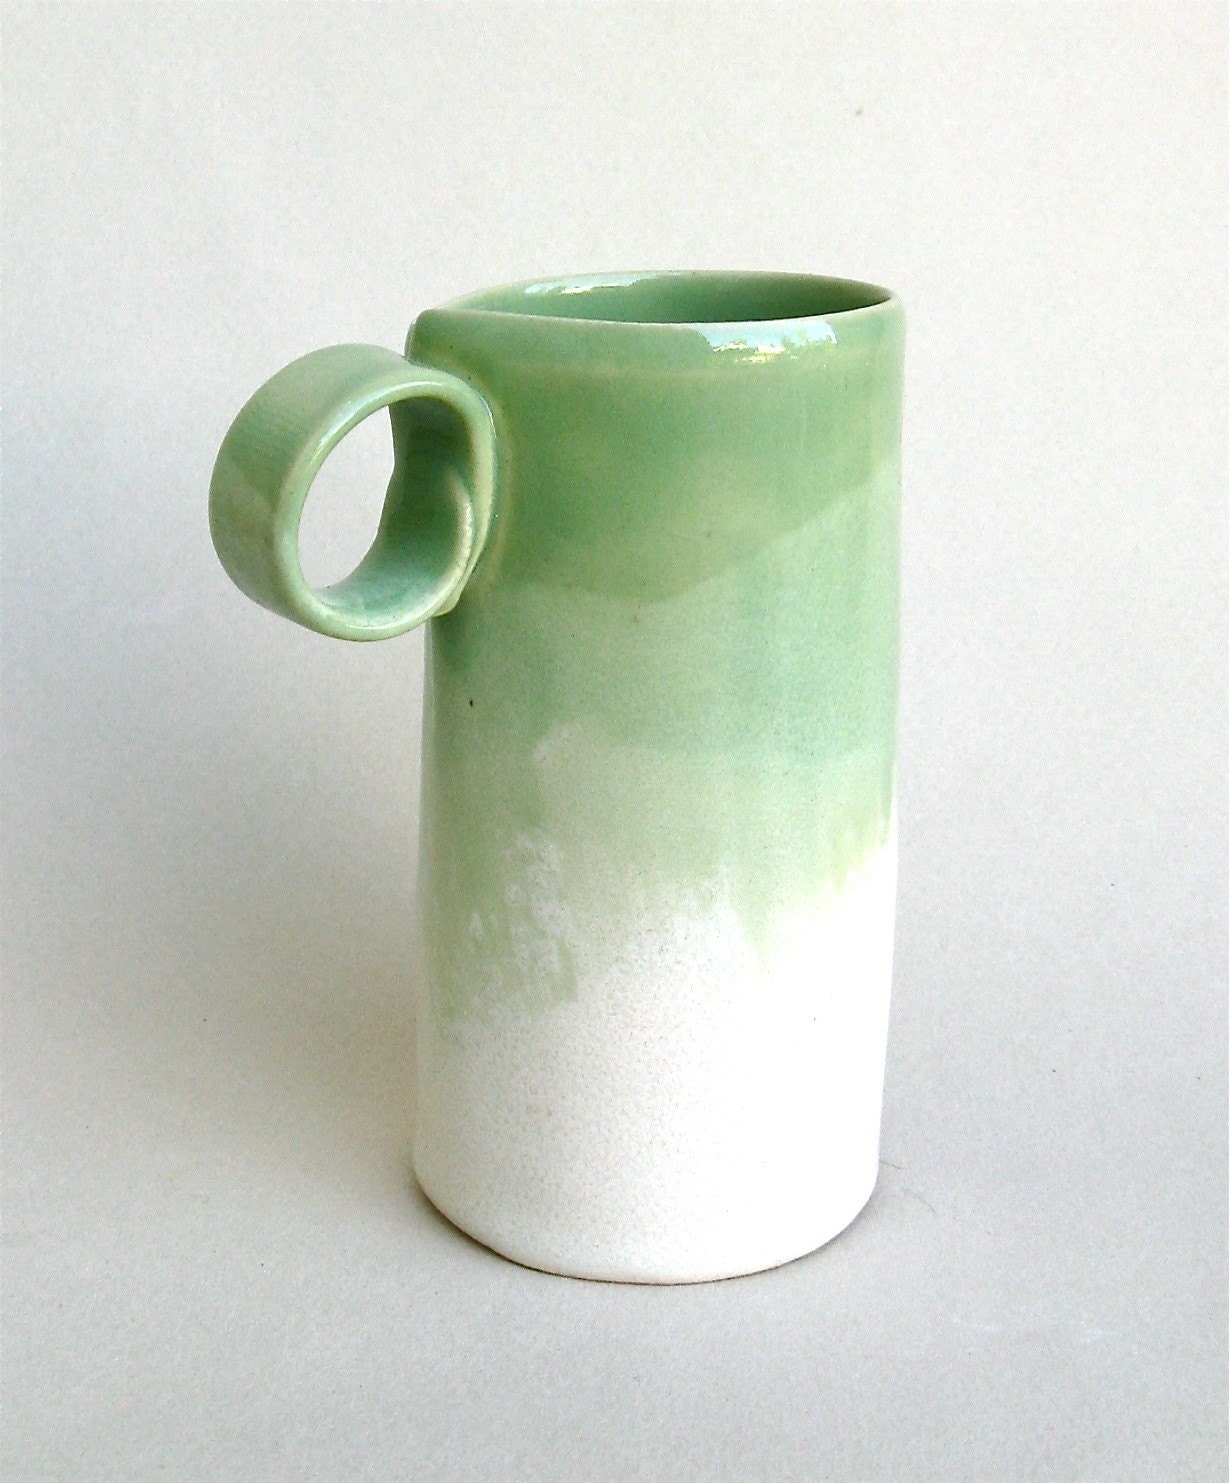 petite hand built porcelain cup